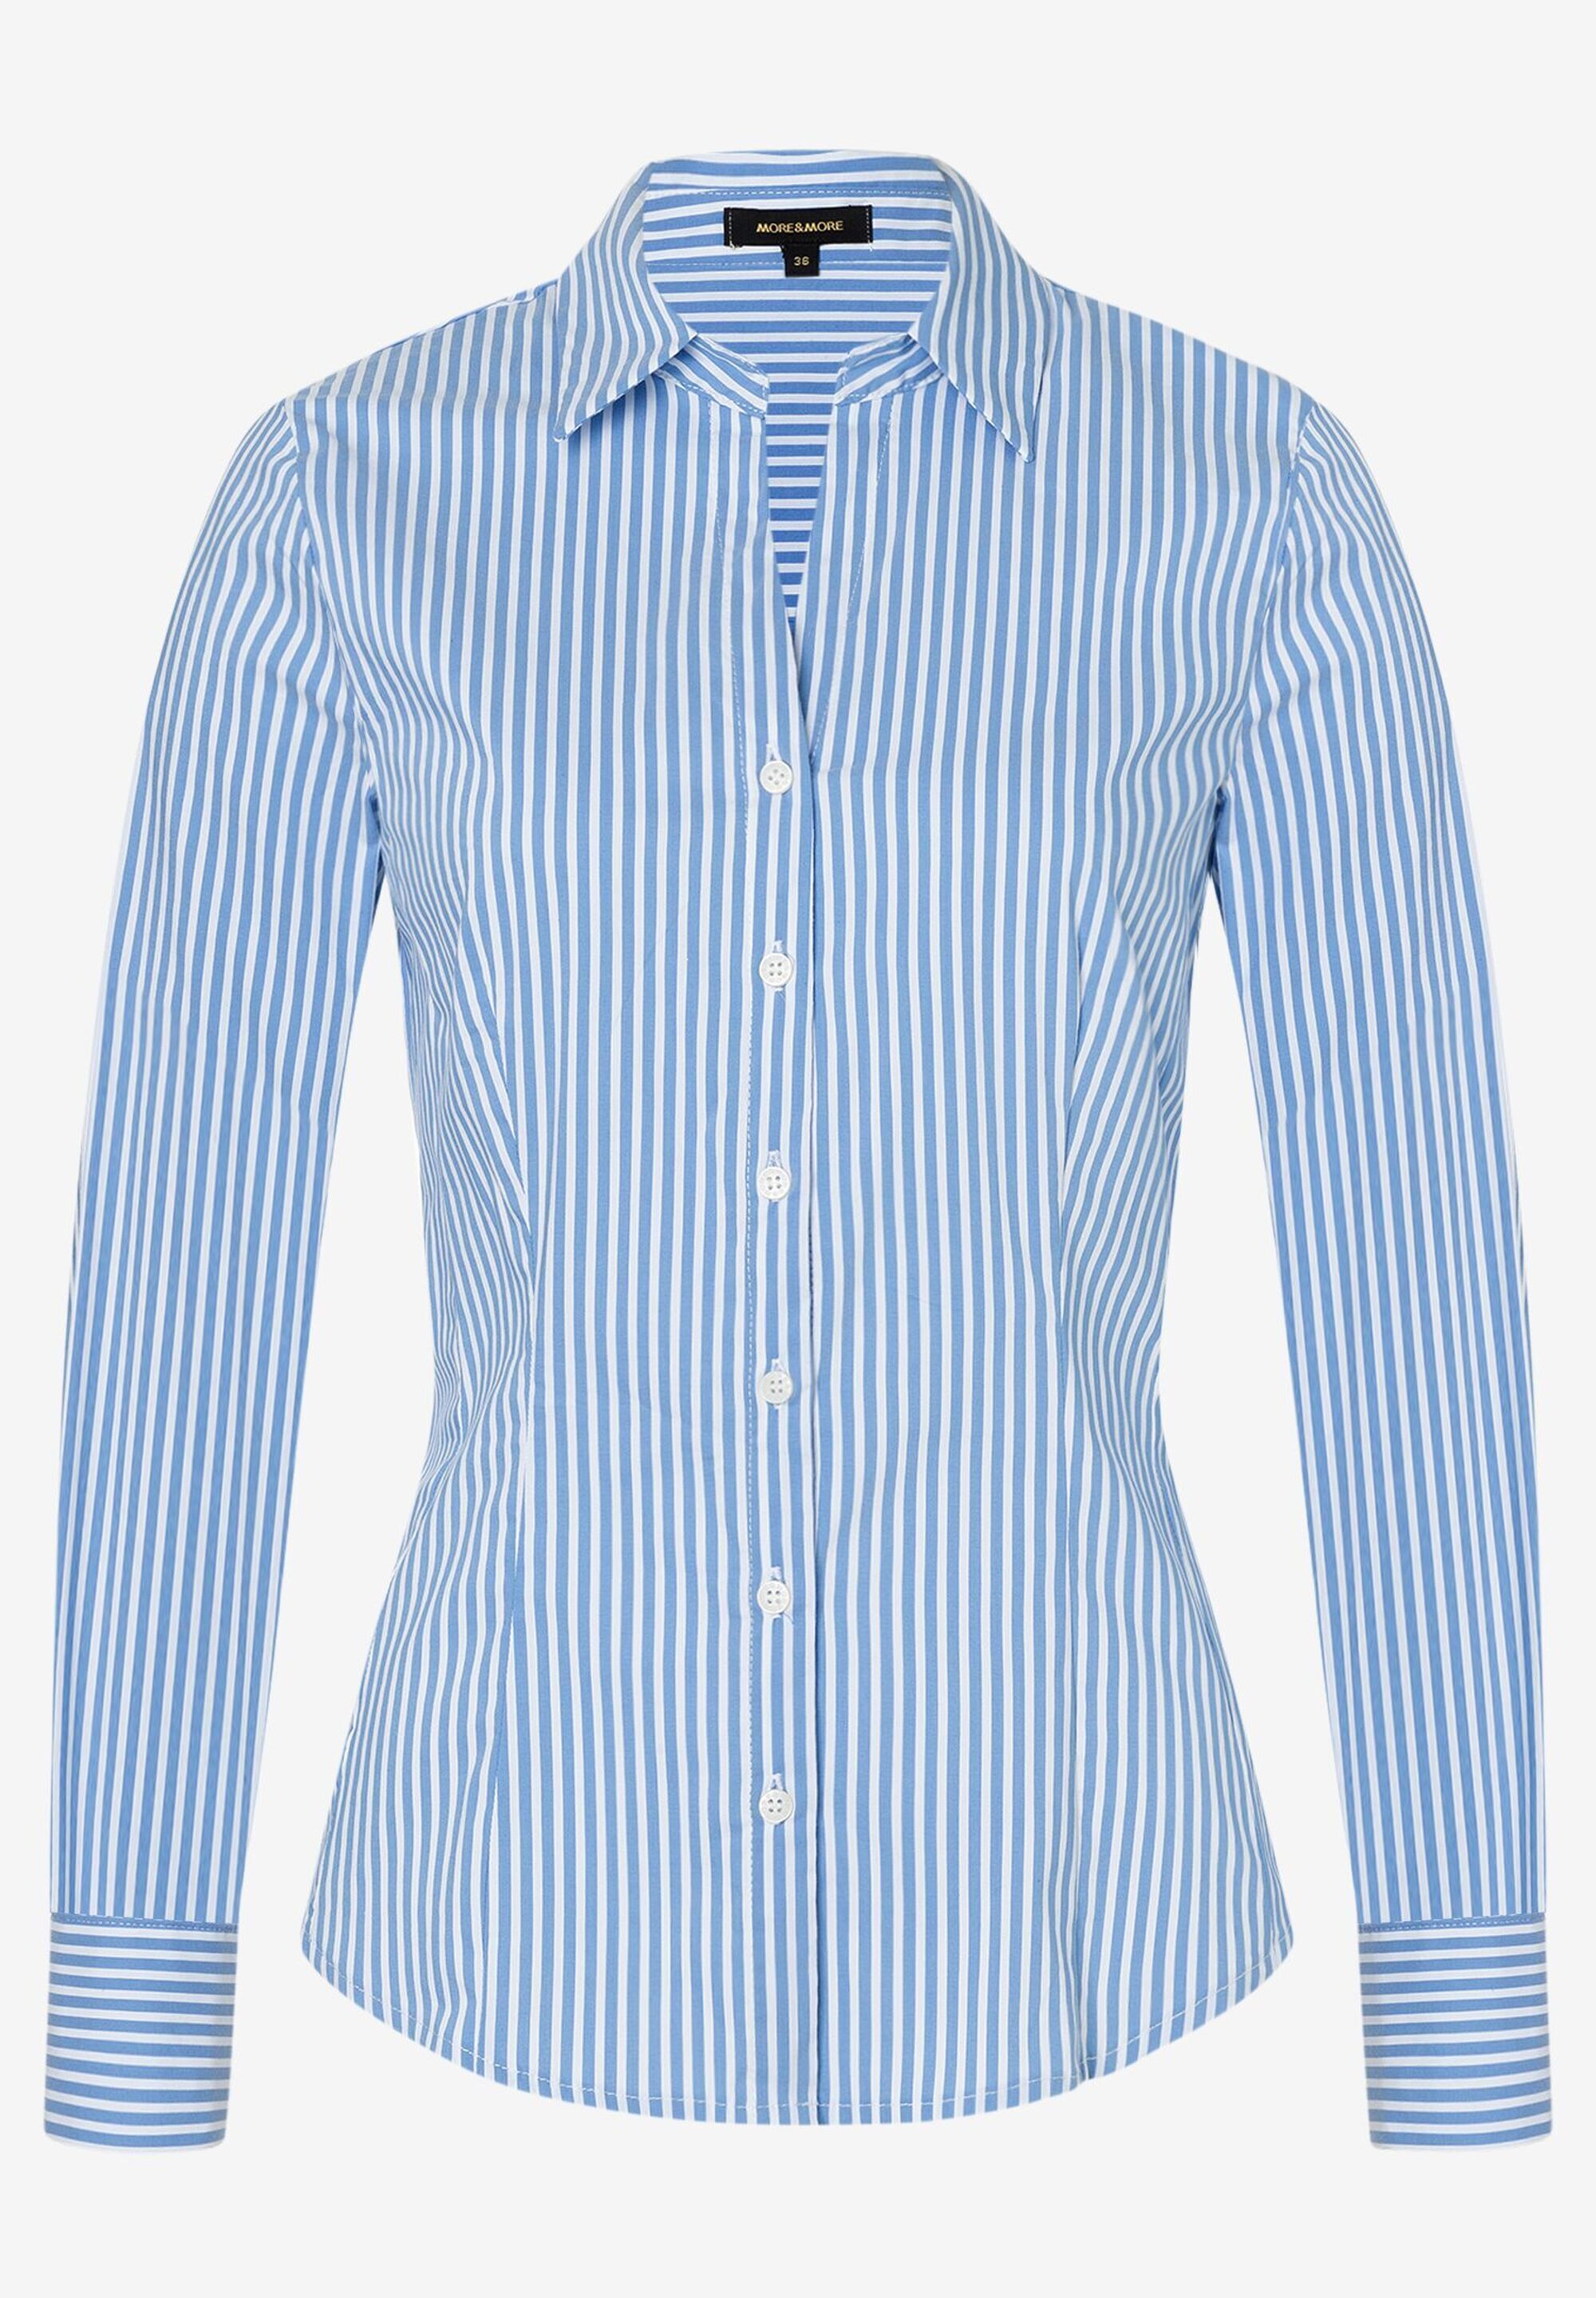 offizielle | & Der Hemdbluse mit MORE MORE Streifen, Frühjahrs-Kollektion blau/weiß, Onlineshop